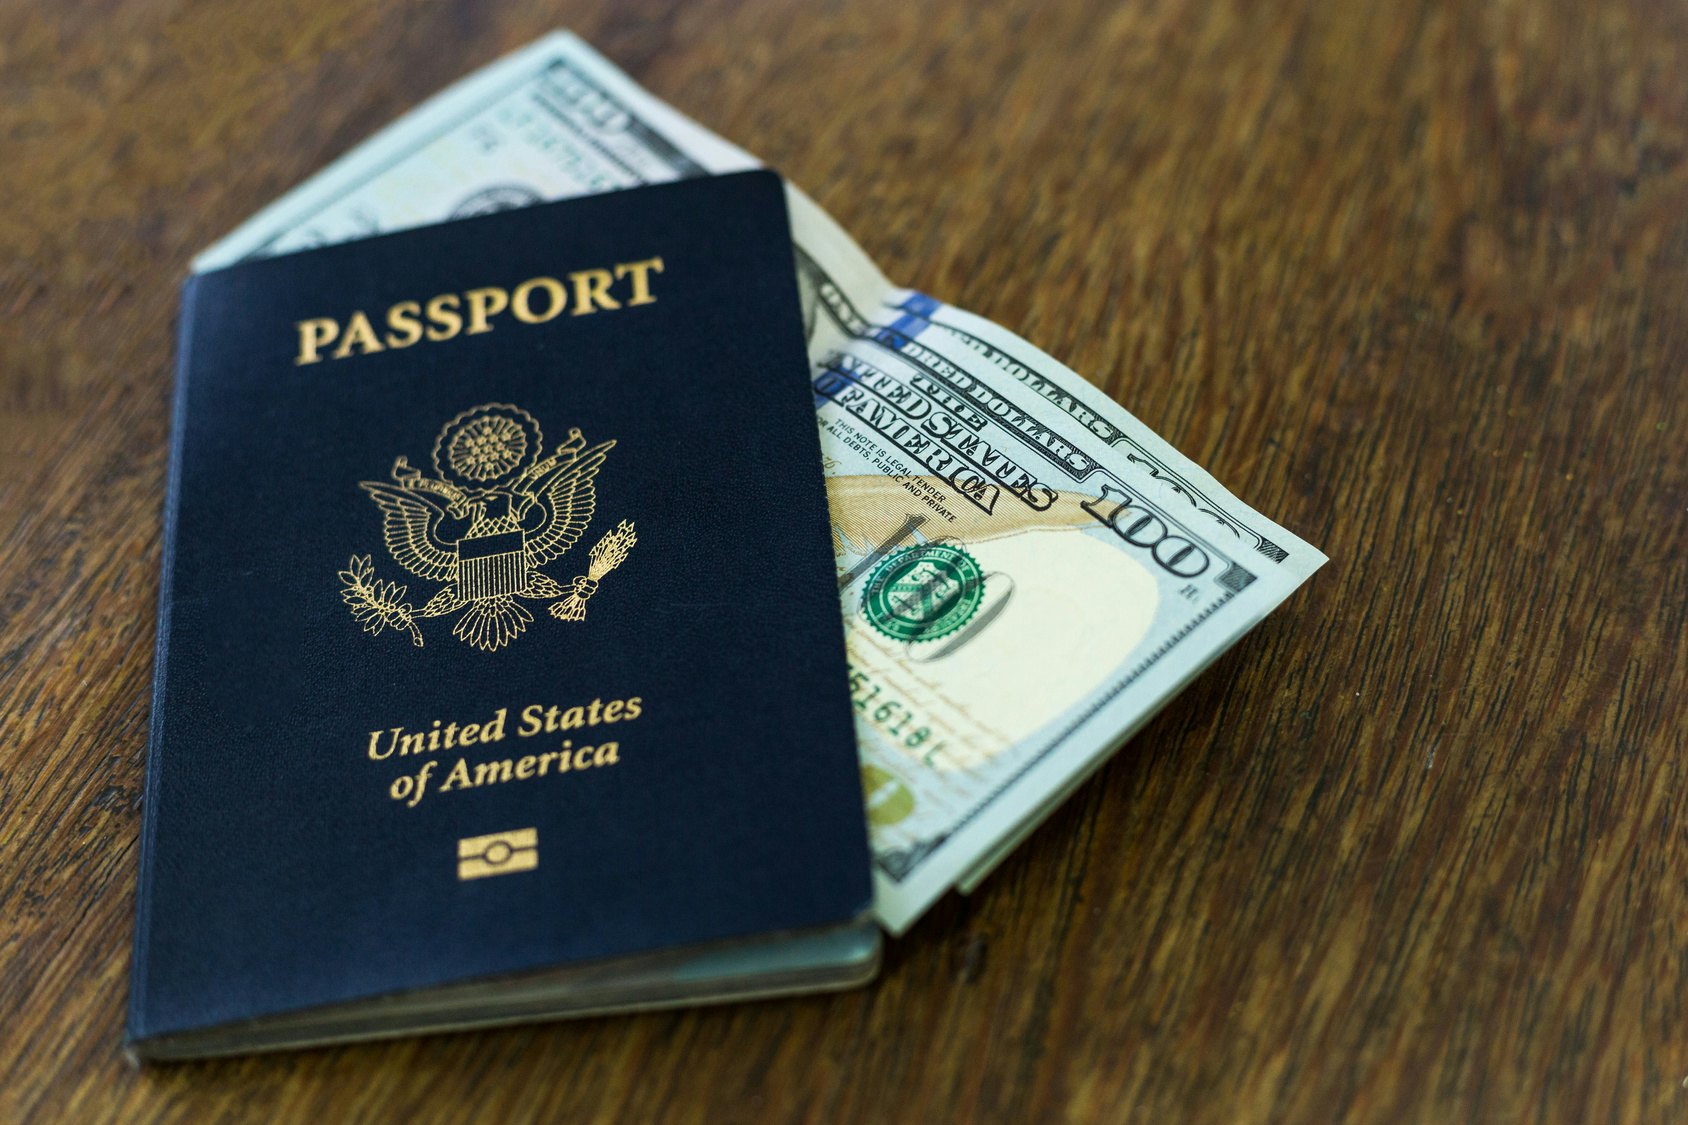 renew passport fees